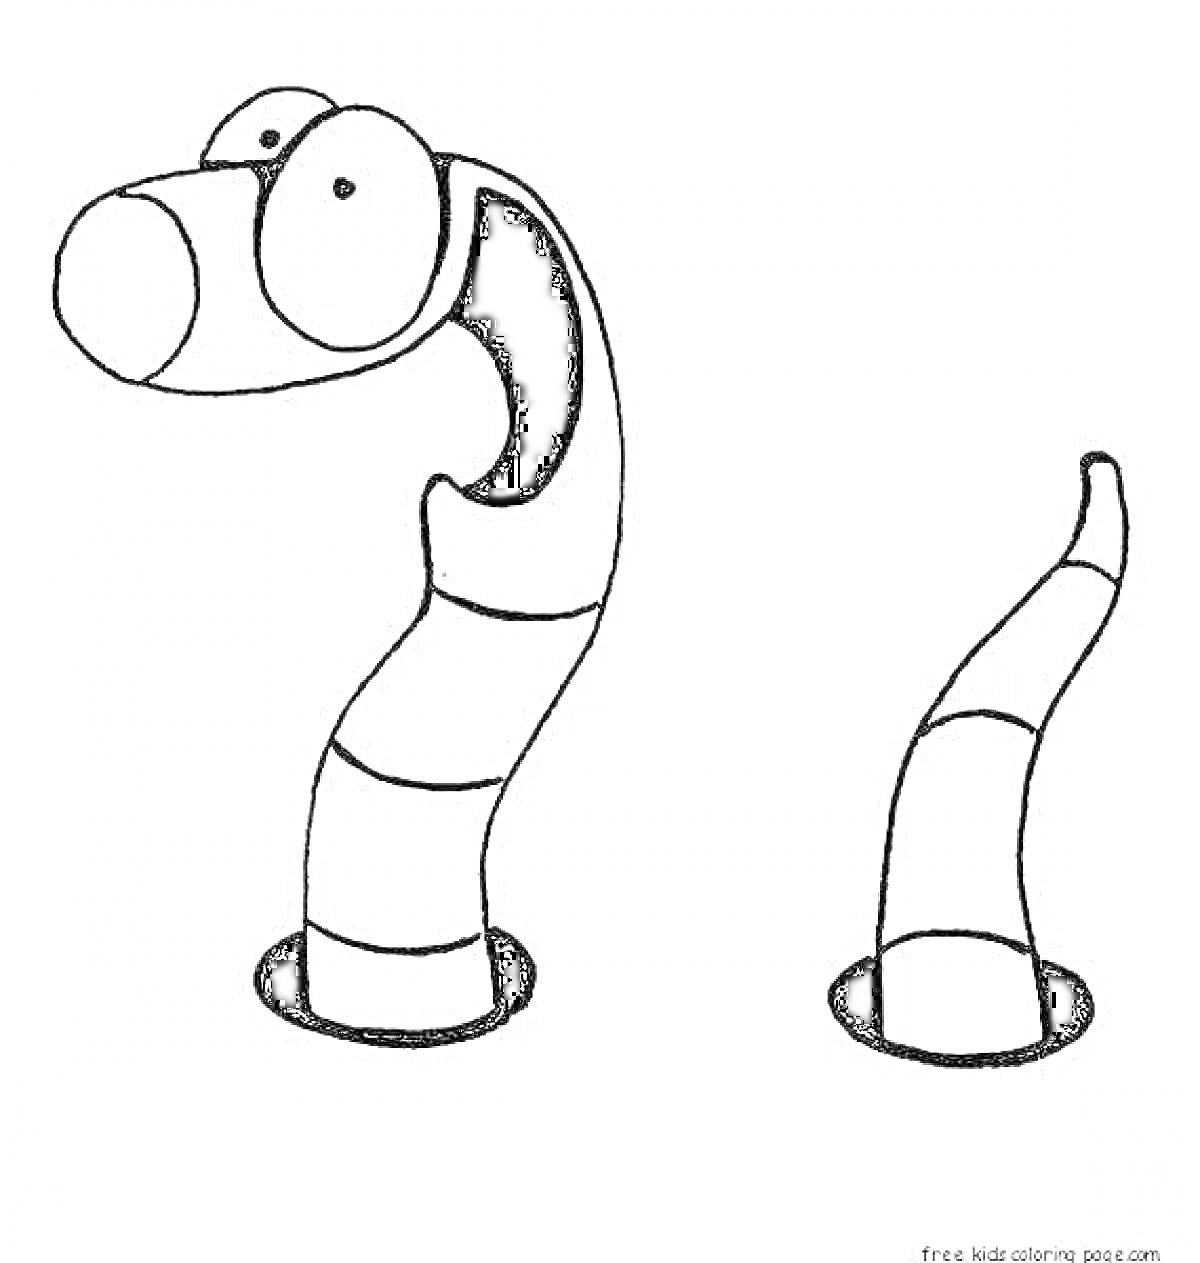 Раскраска Два червячка, выглядывающих из норок, смешной и улыбающийся червячок справа